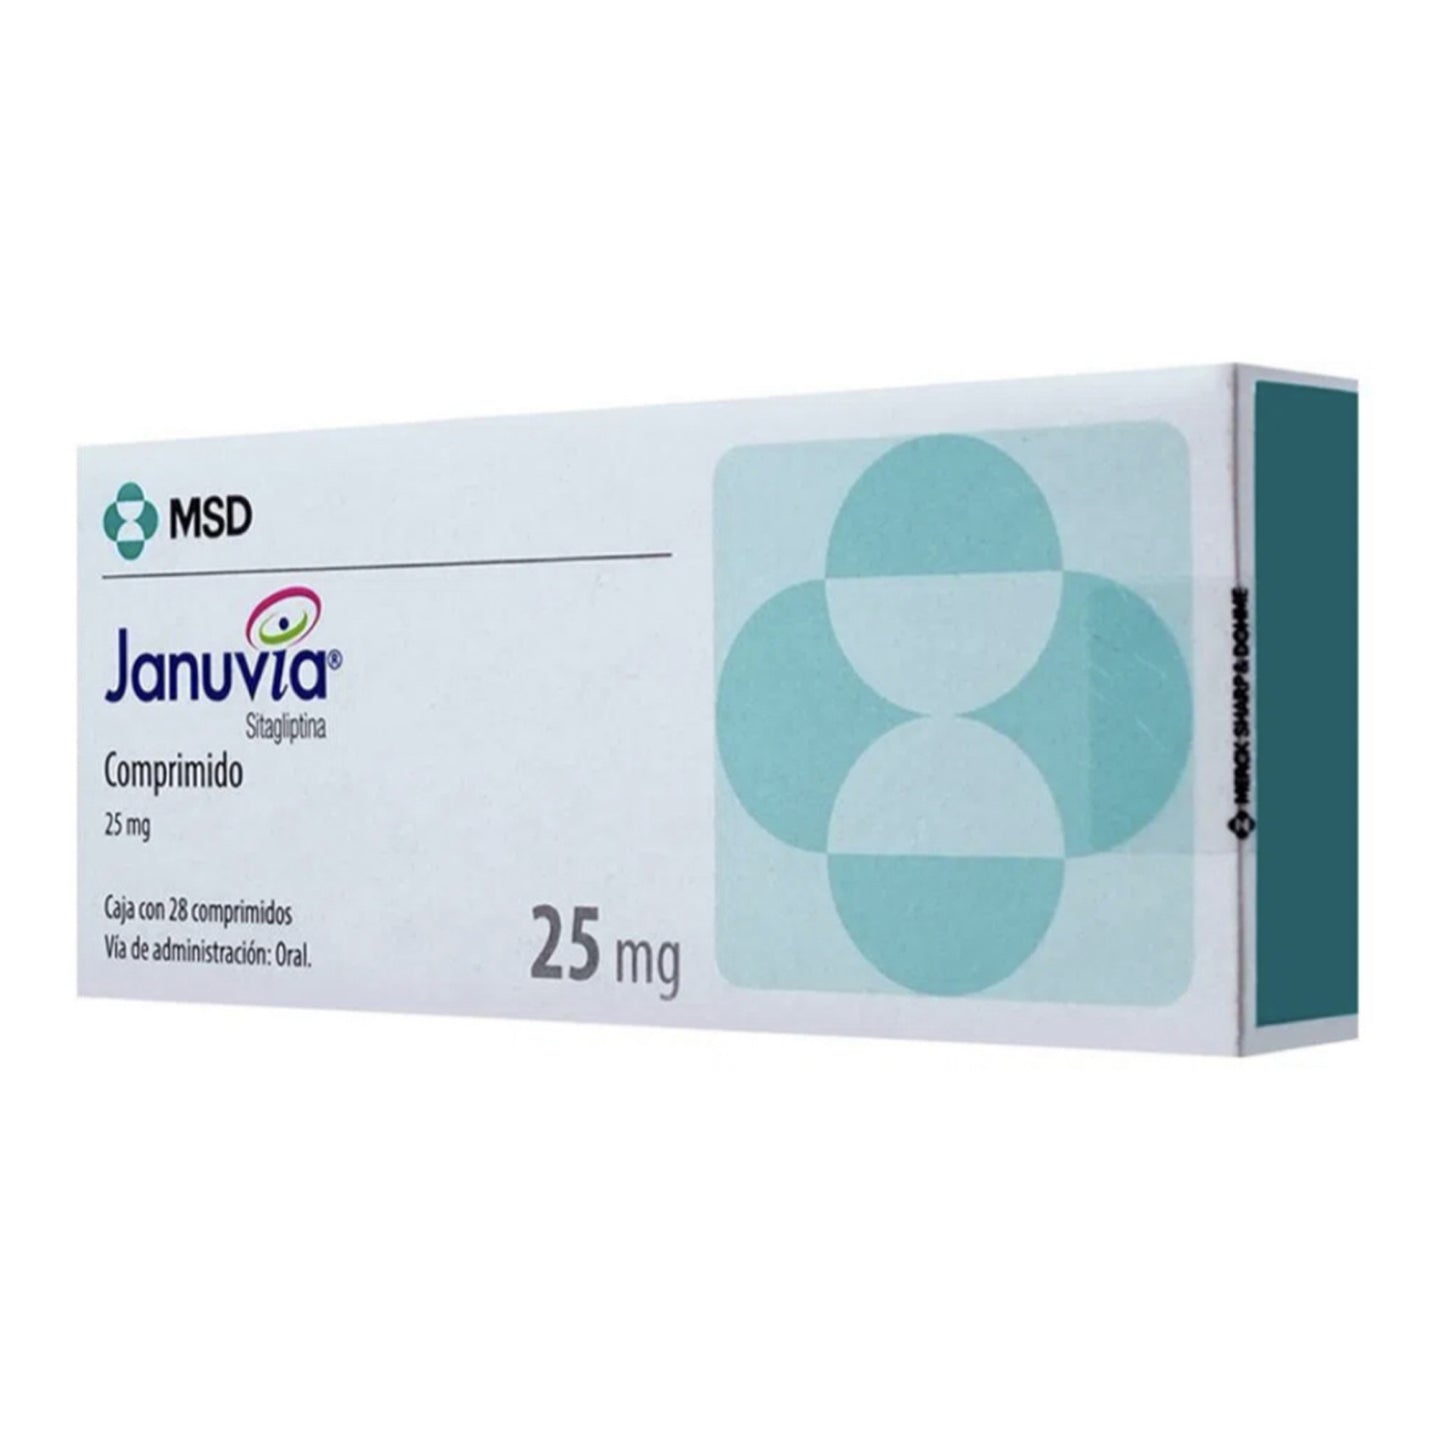 Januvia 25 mg, 28 comprimidos.